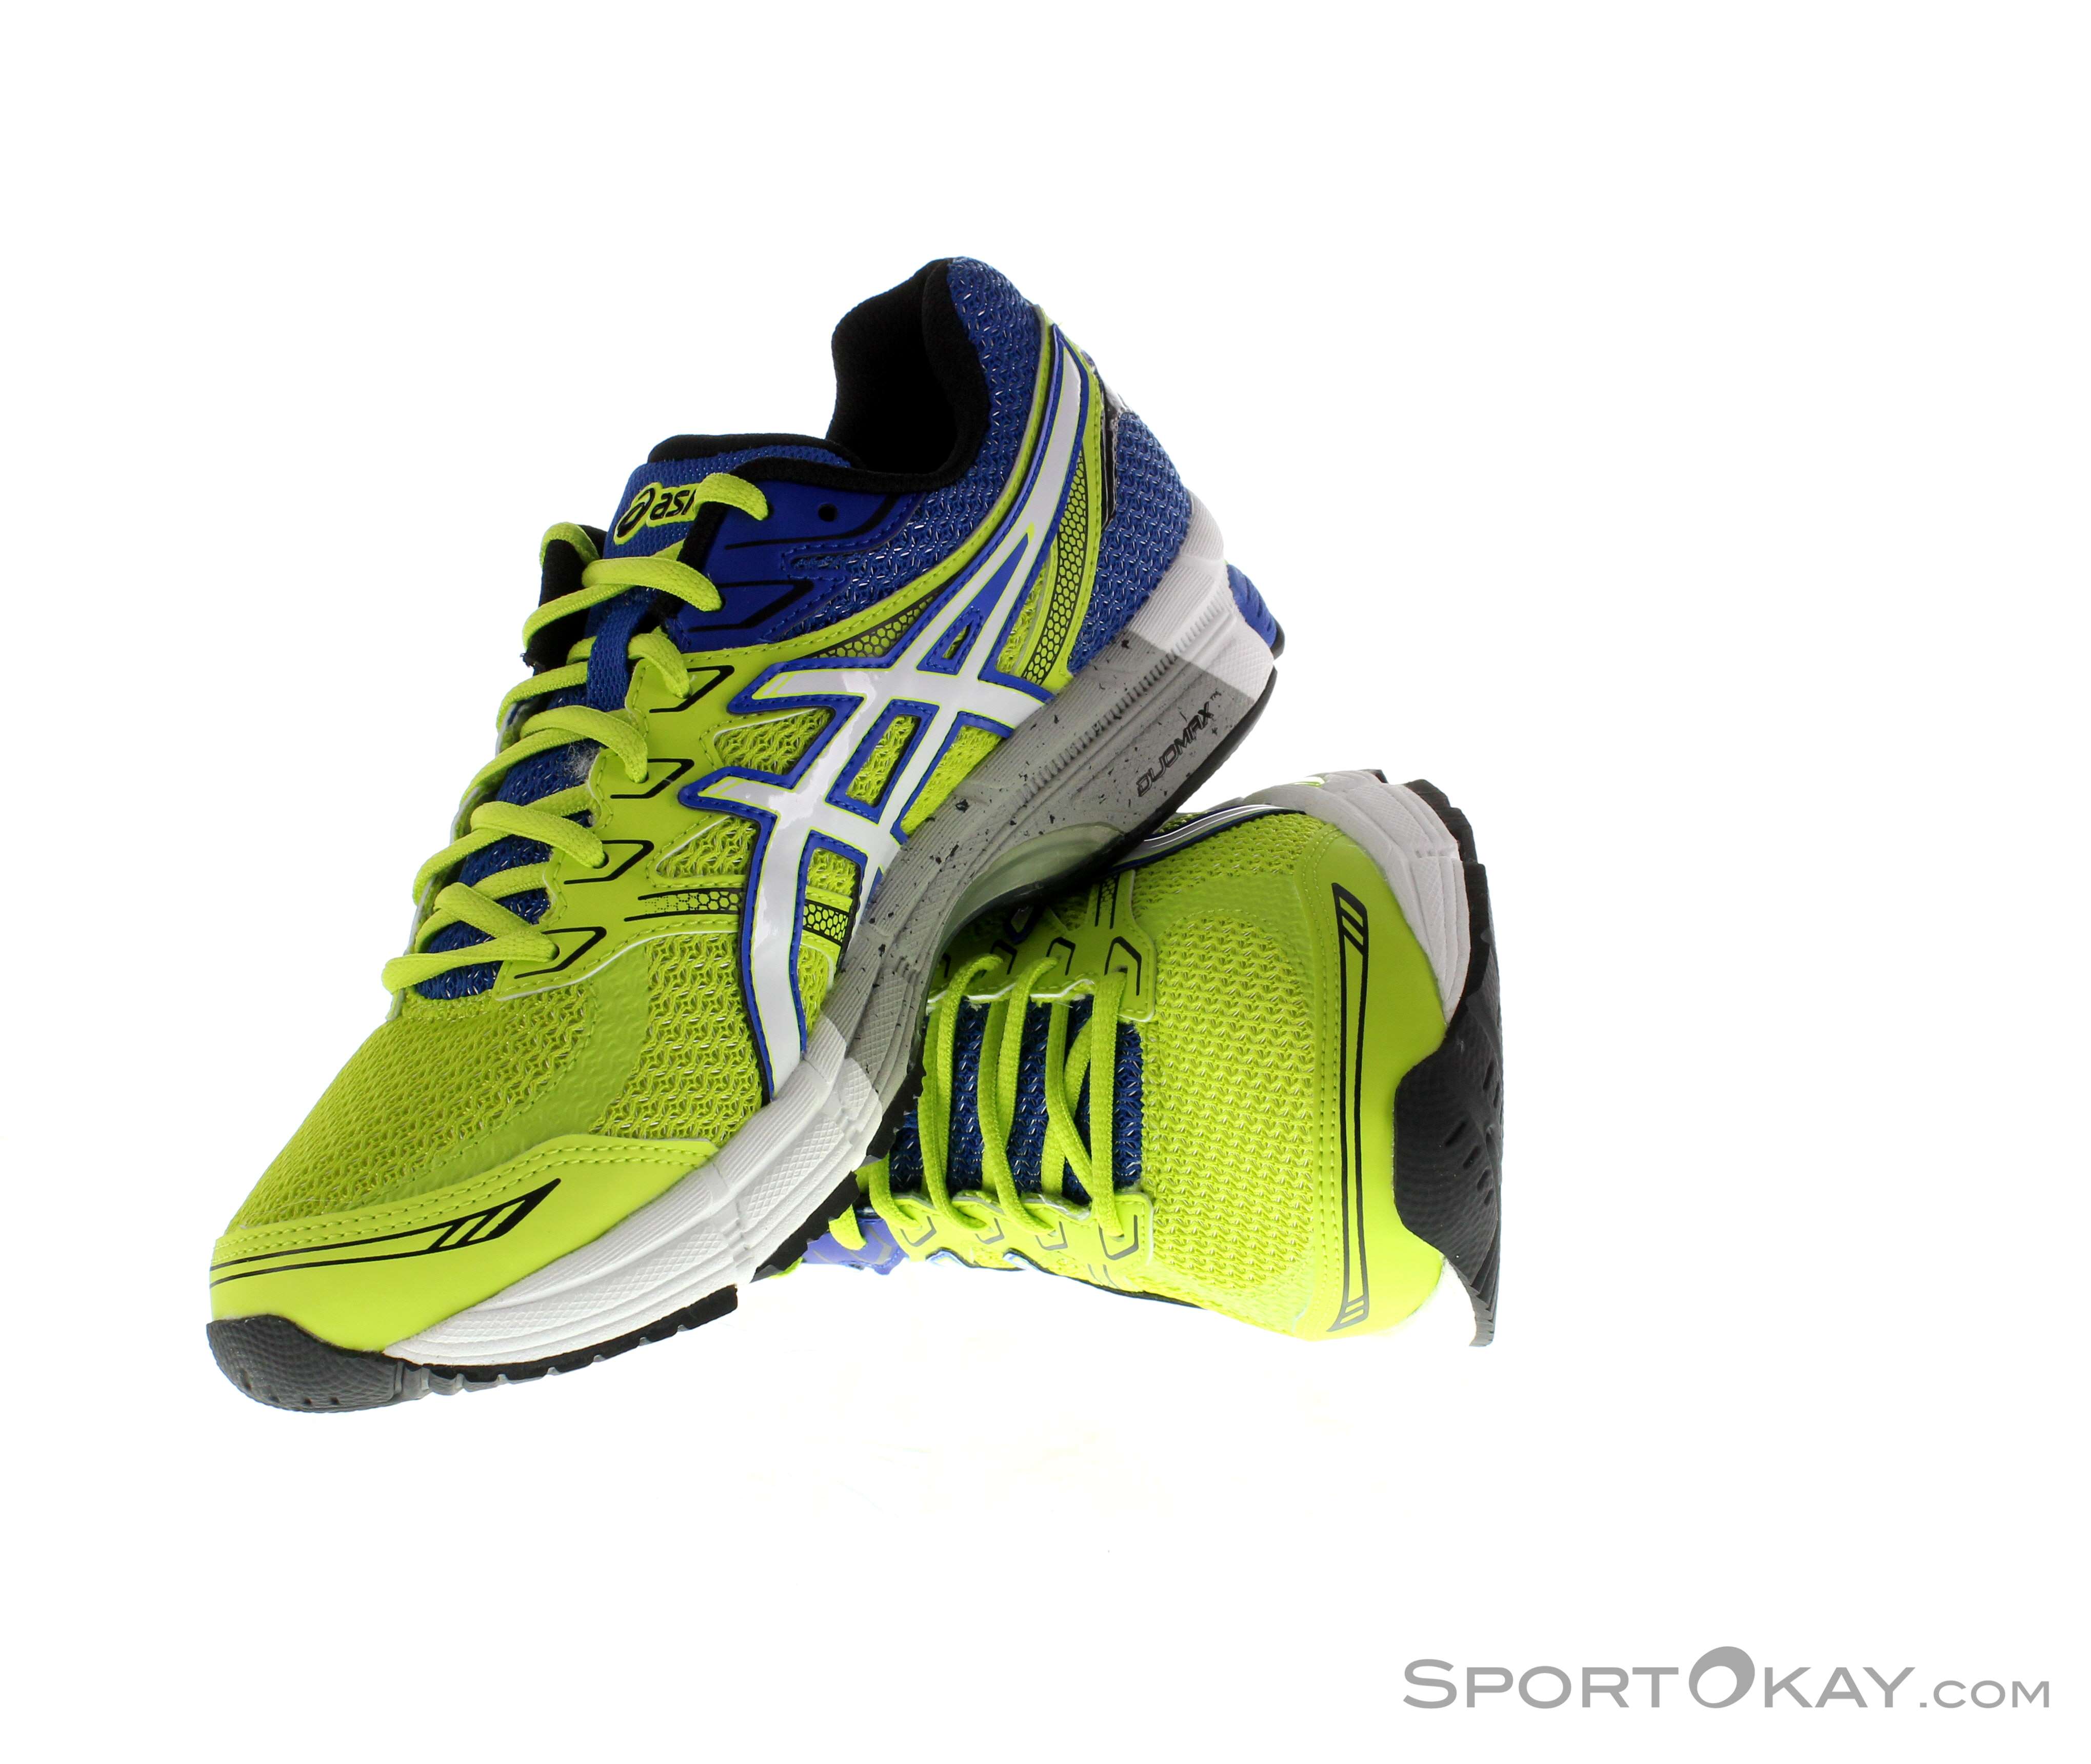 Asics Phoenix 6 Herren Laufschuhe Running Shoes - Shoes - Running All